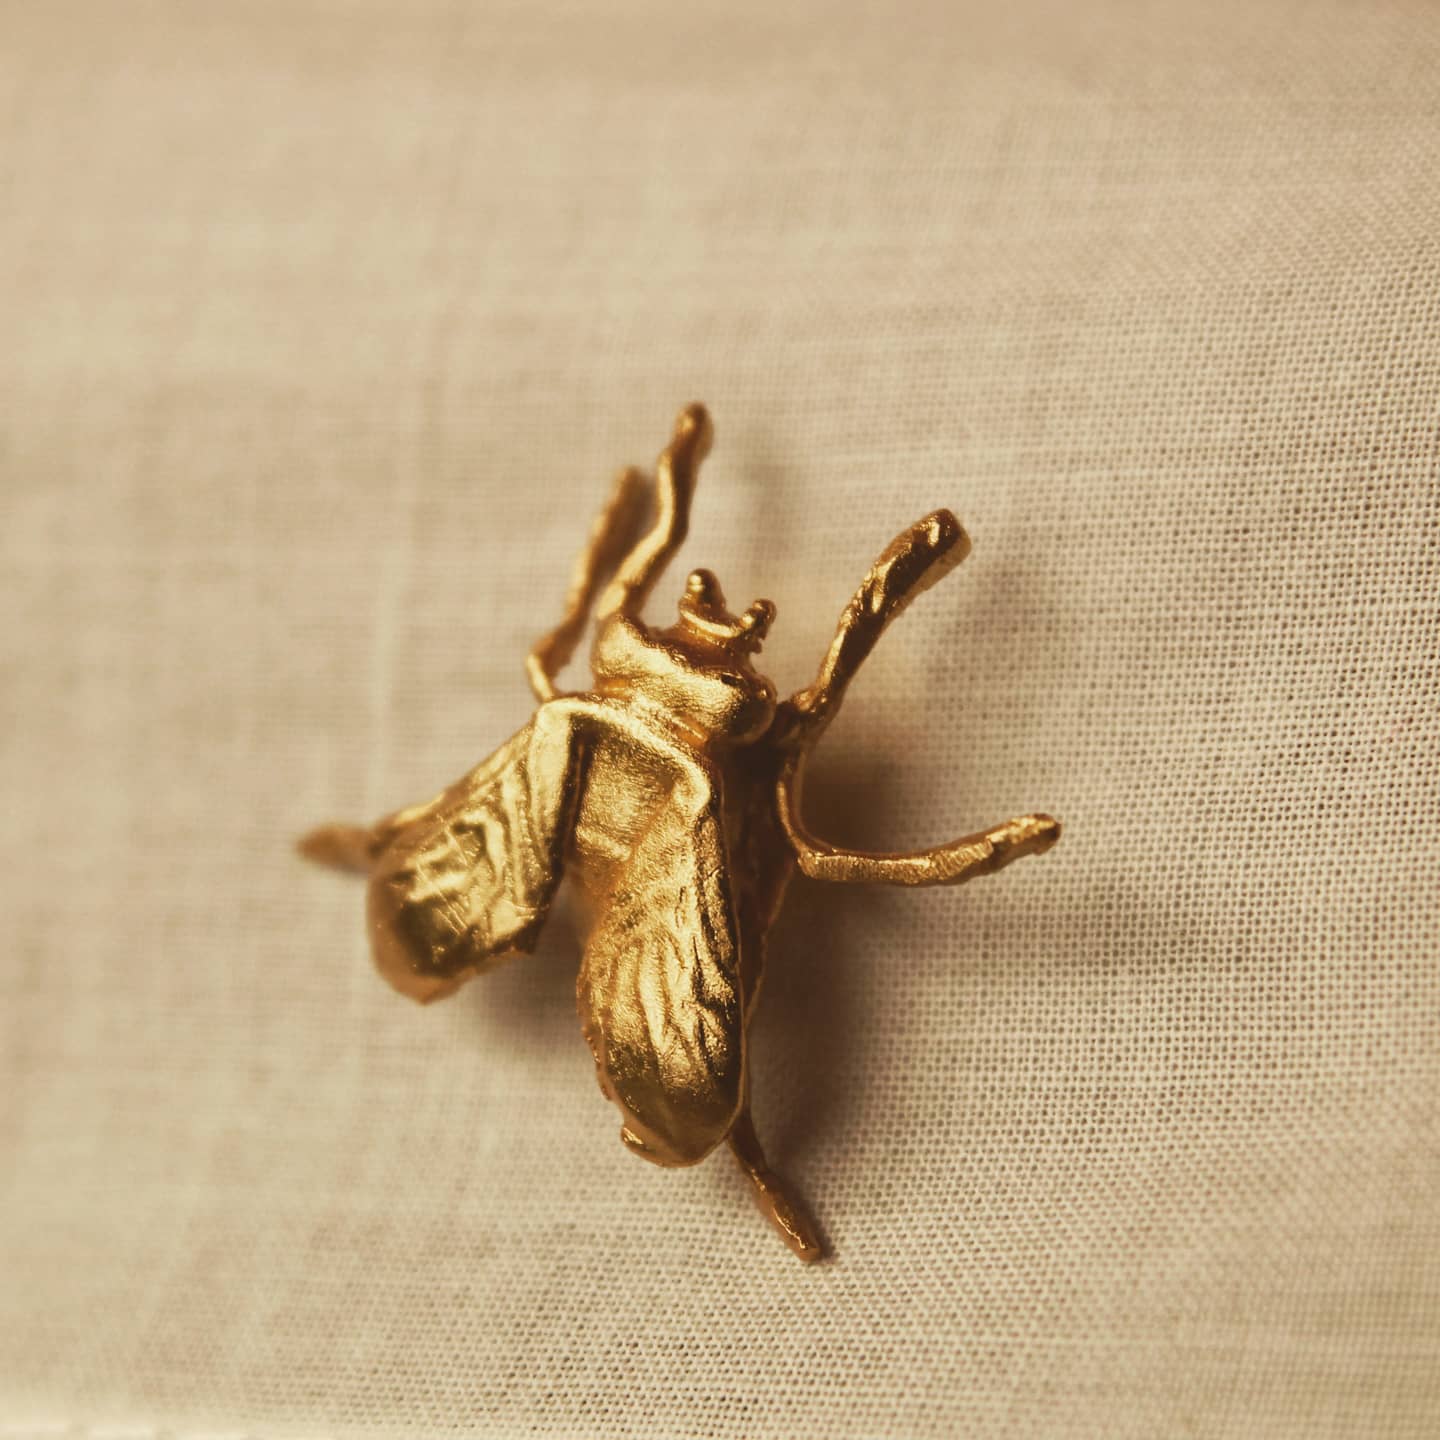 Pin de mosca pequeña